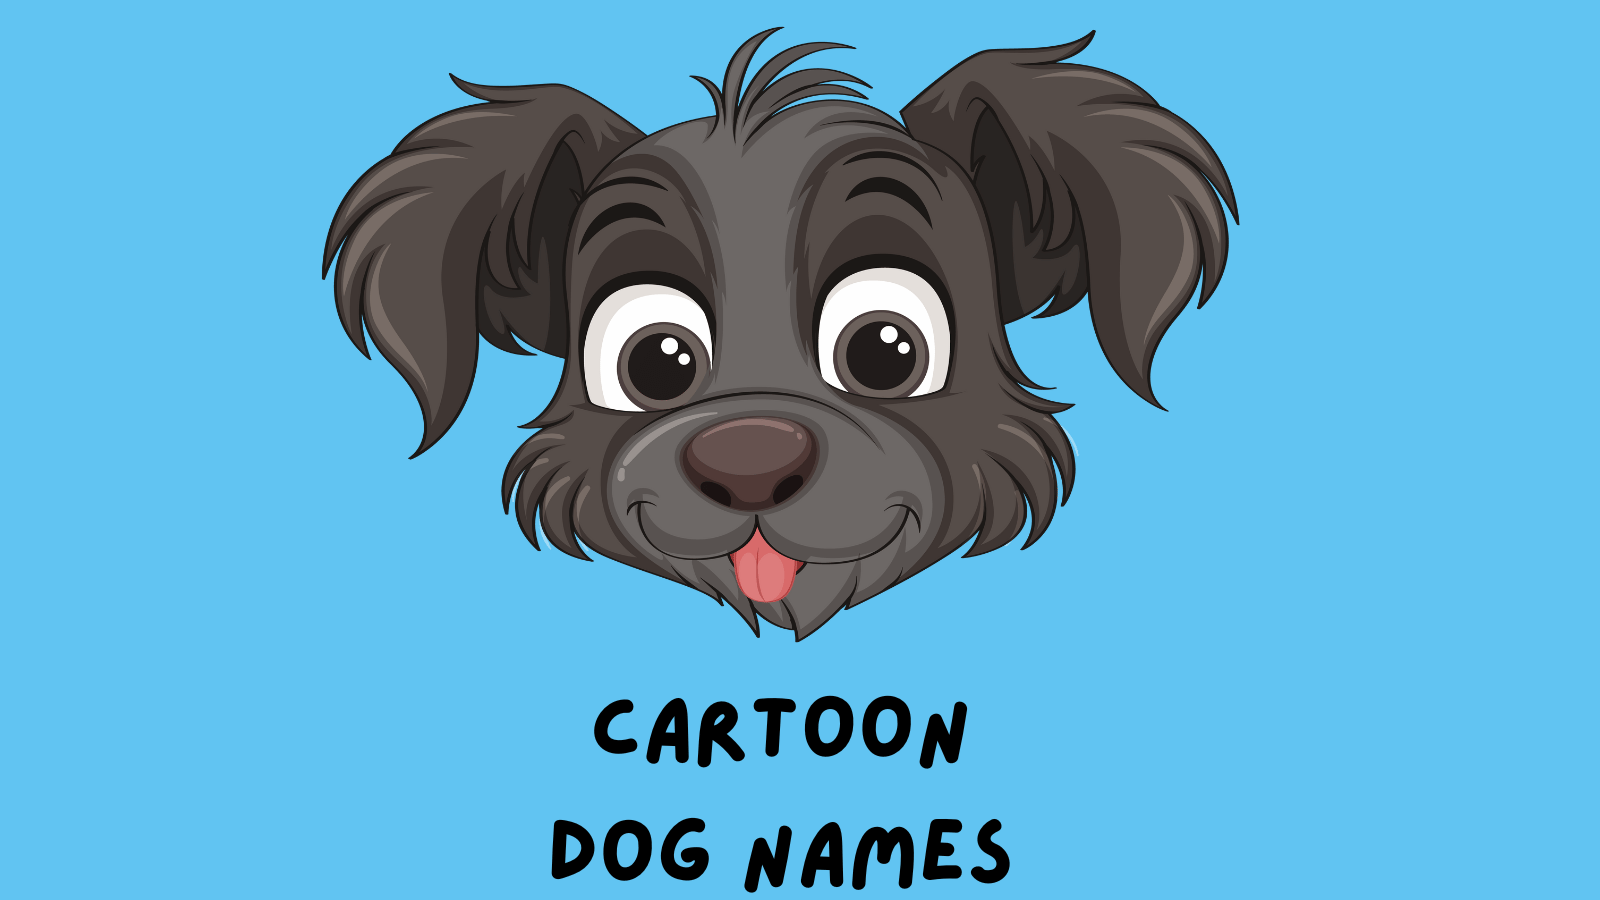 Anime Dog Names - My Dog's Name